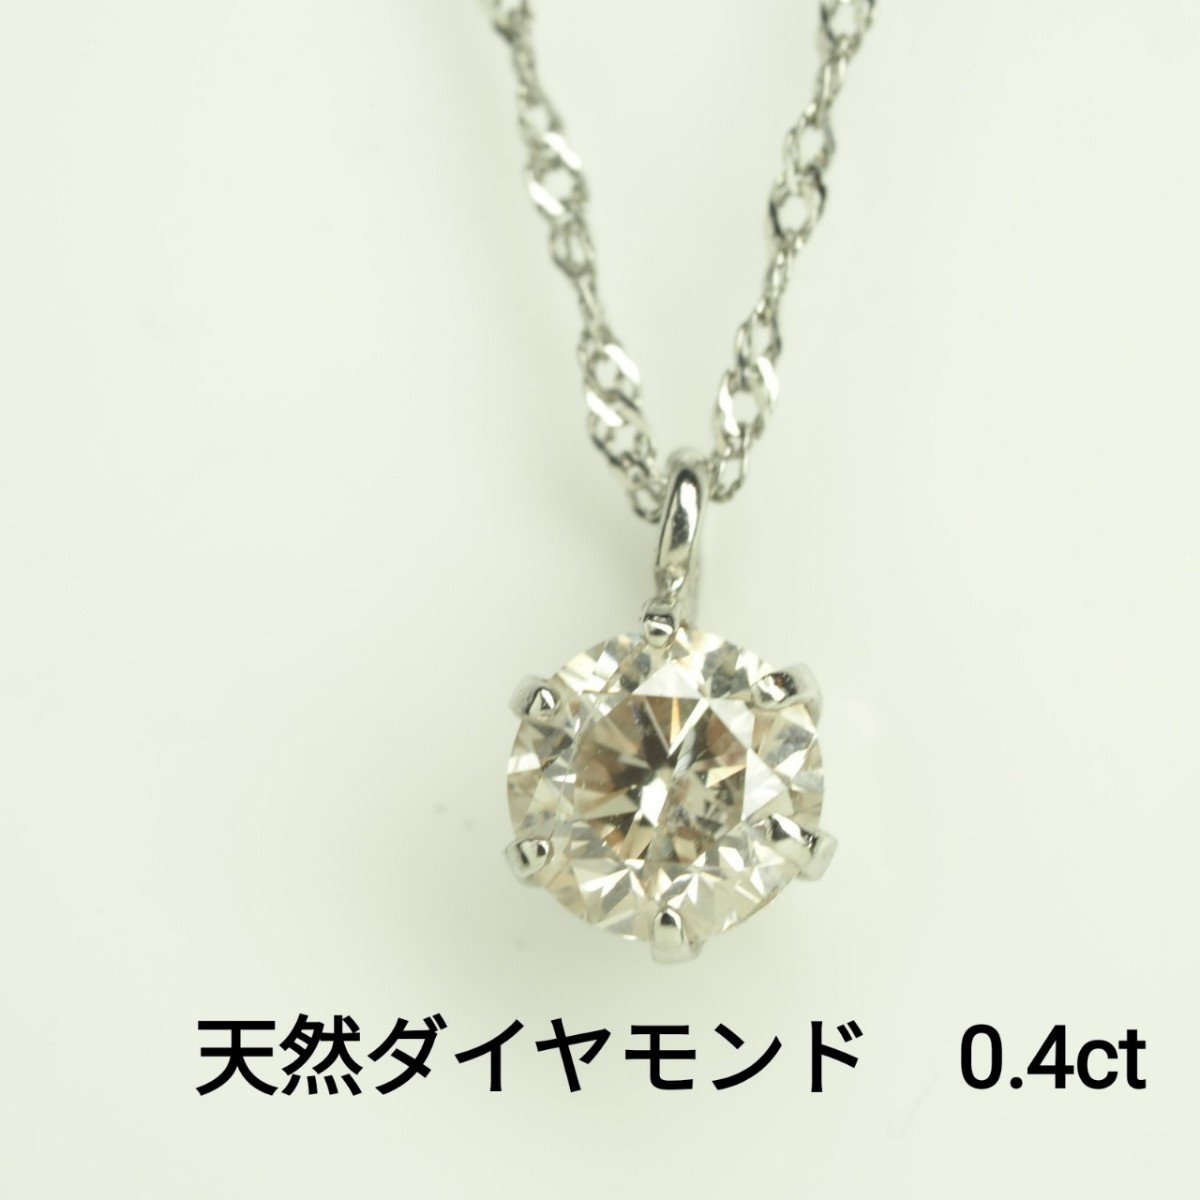 天然ダイヤモンド ネックレス D0 4ct Pt900/850 Iクラス G～Hカラー